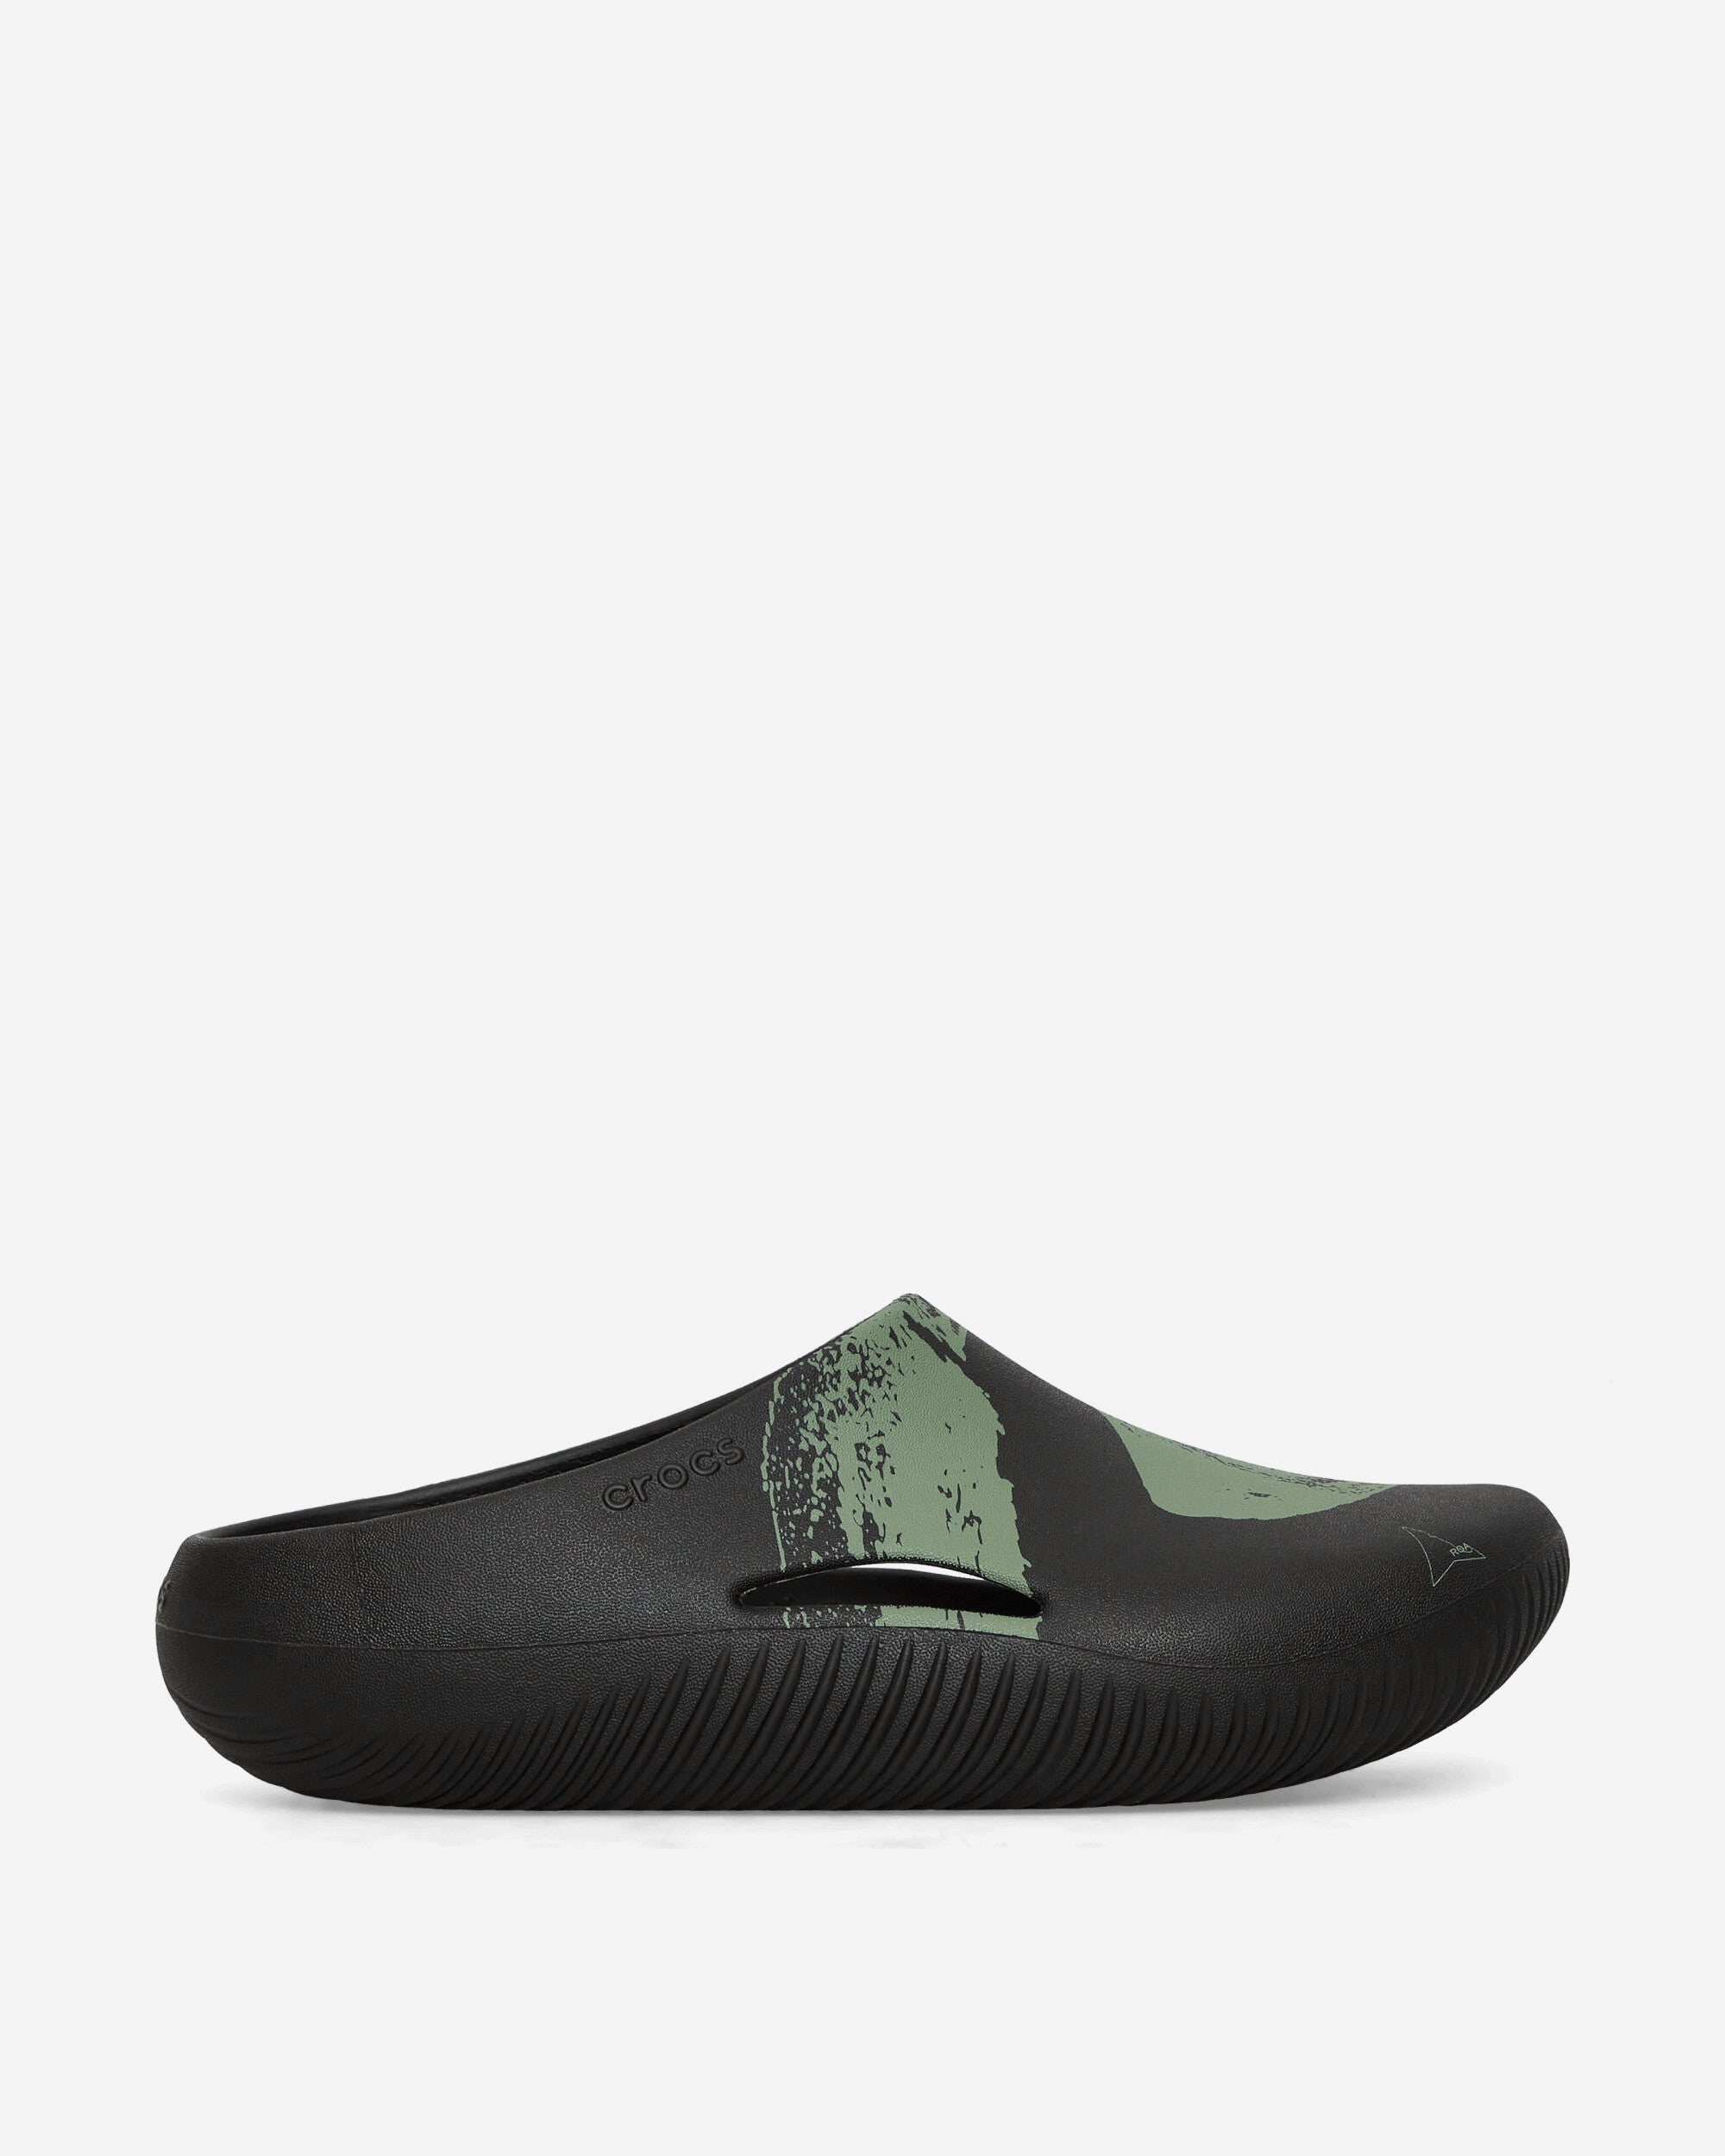 Crocs Roa X Crocs Mellow Clog Black/Multi Sandals and Slides Slides CR209388 BKMI